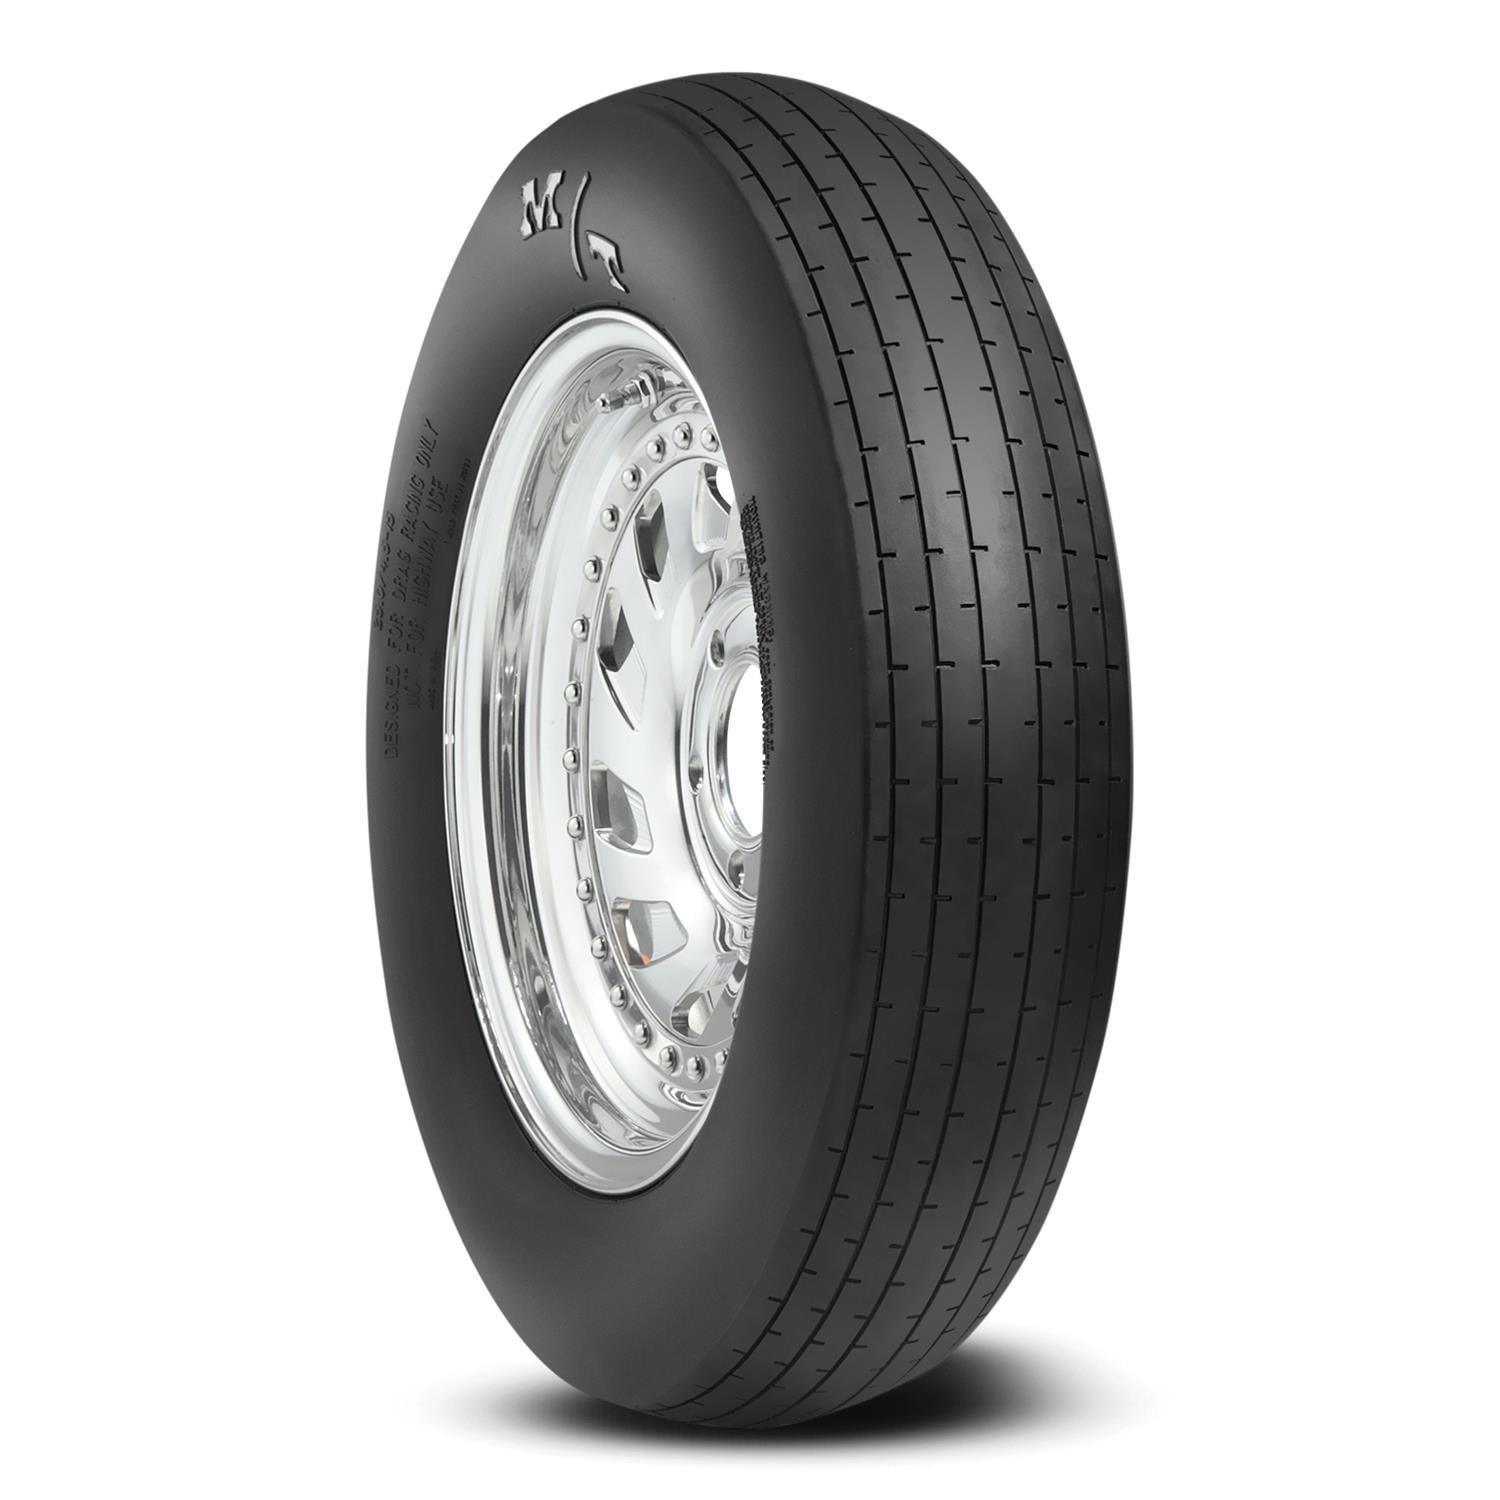 25.0/4.5-15 ET Drag Front Tire - Burlile Performance Products